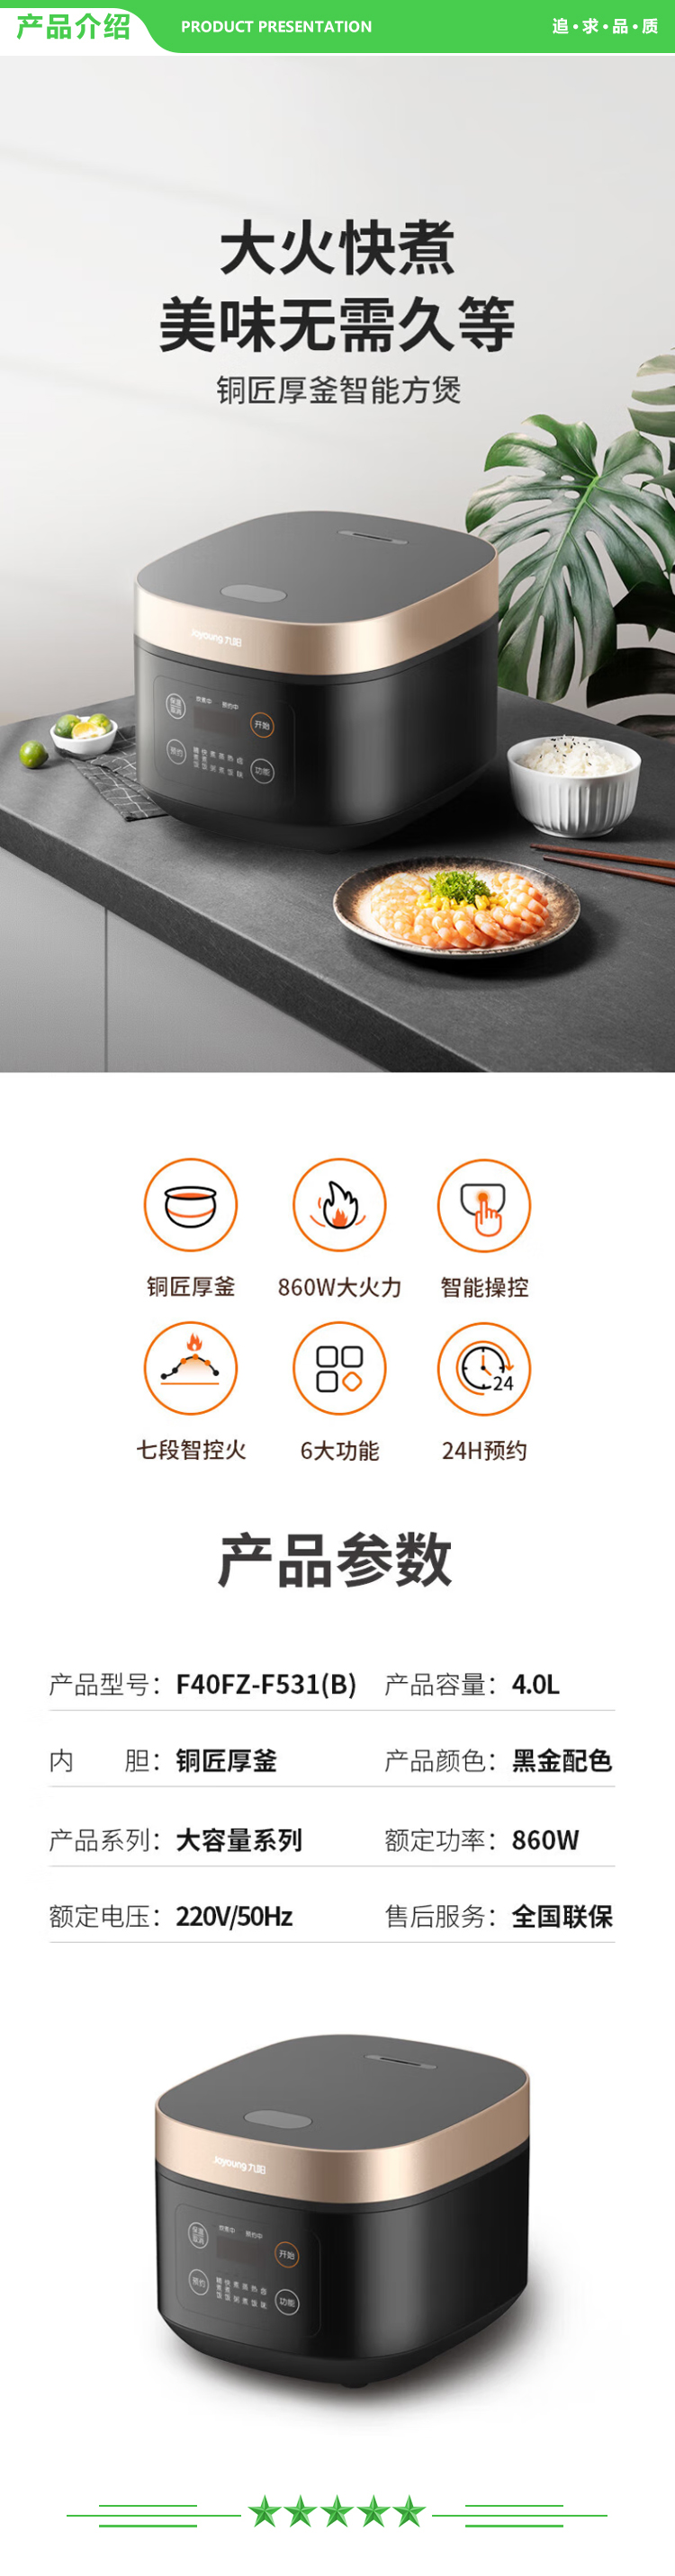 九阳 Joyoung F40FZ-F531 电饭煲多功能家用电饭锅智能预约定时智能菜单 黑金色.jpg